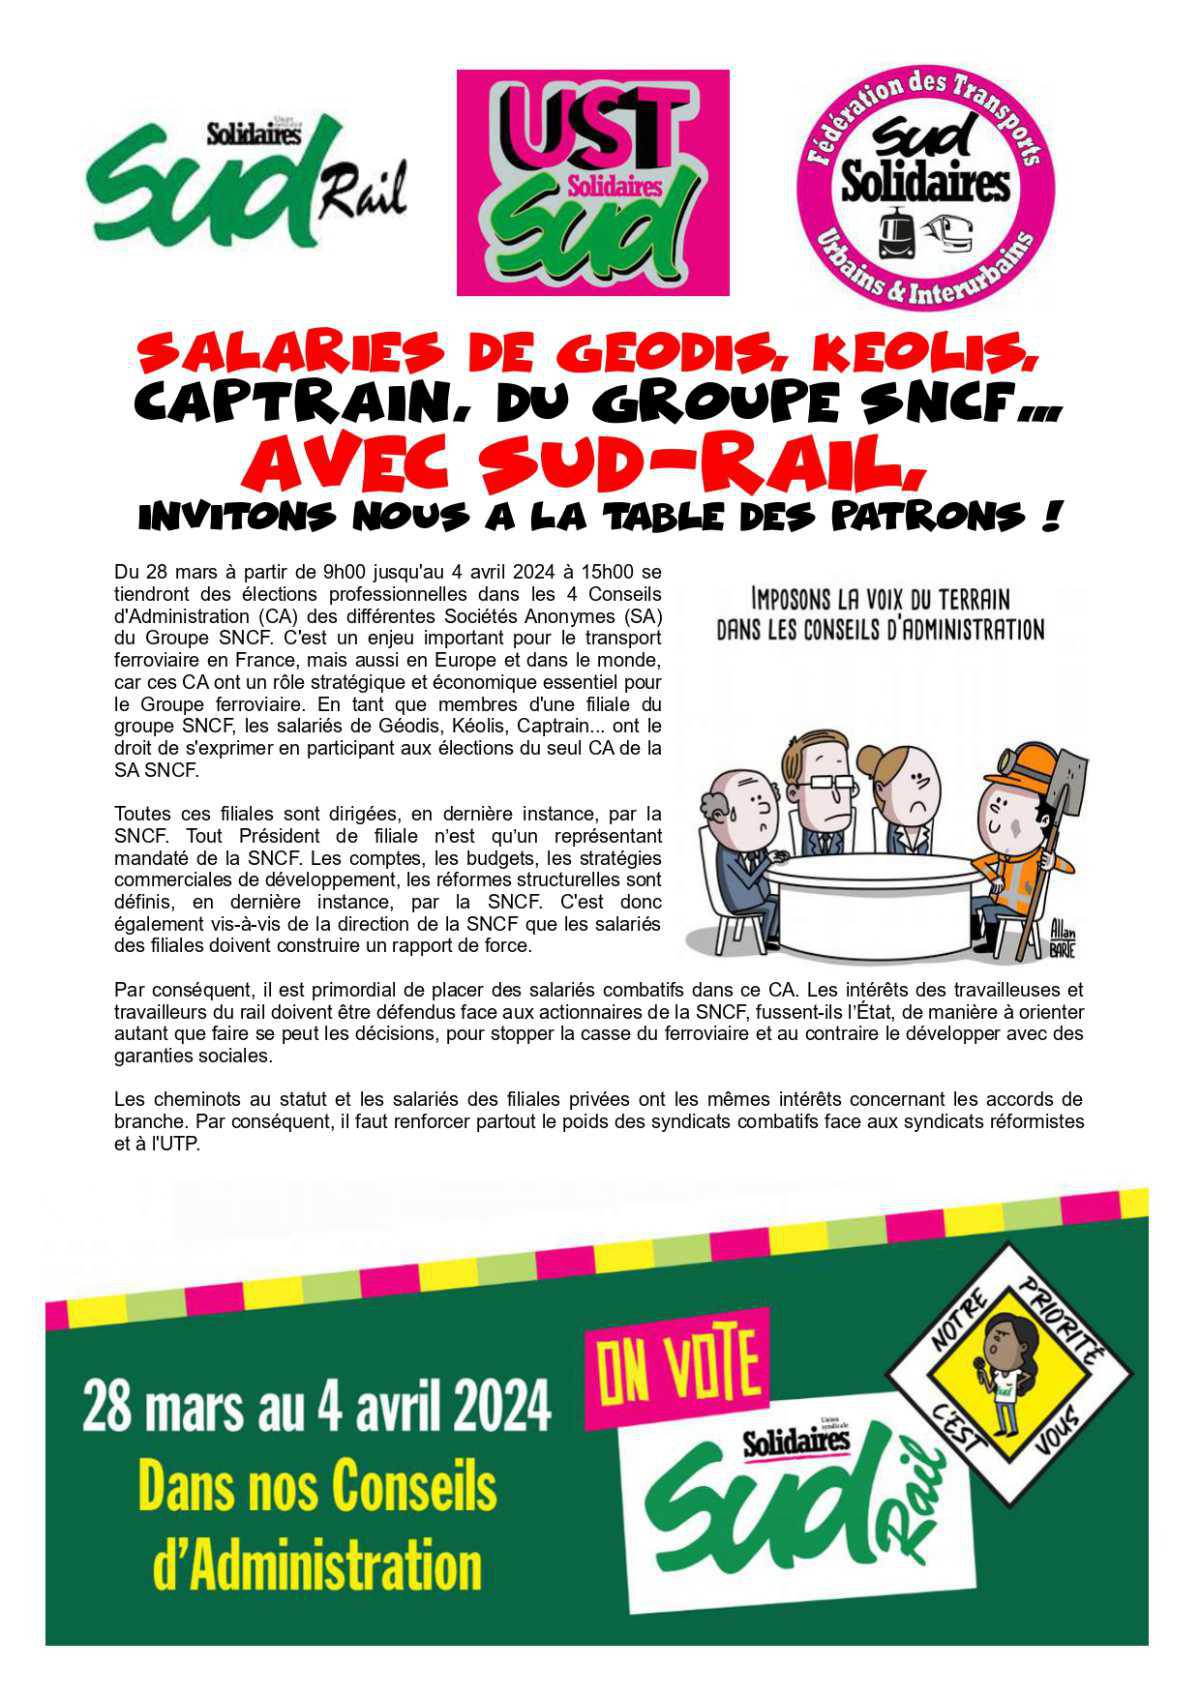 Salariés de Geodis, Keolis, Captrain et du Groupe SNCF...